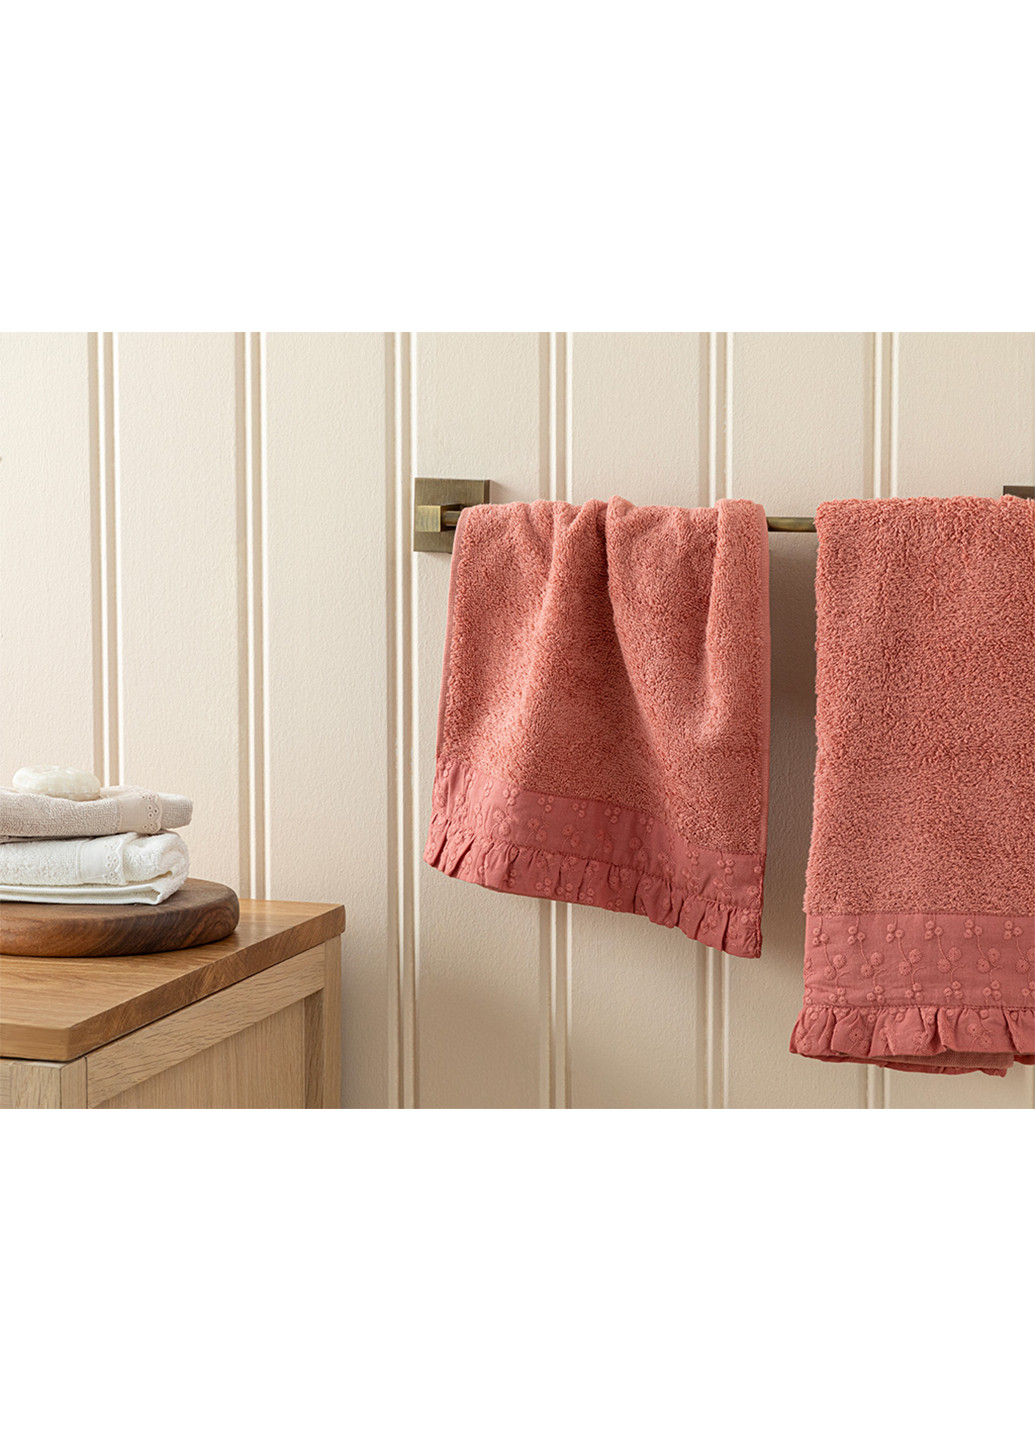 English Home полотенце, 30х40 см однотонный розовый производство - Турция